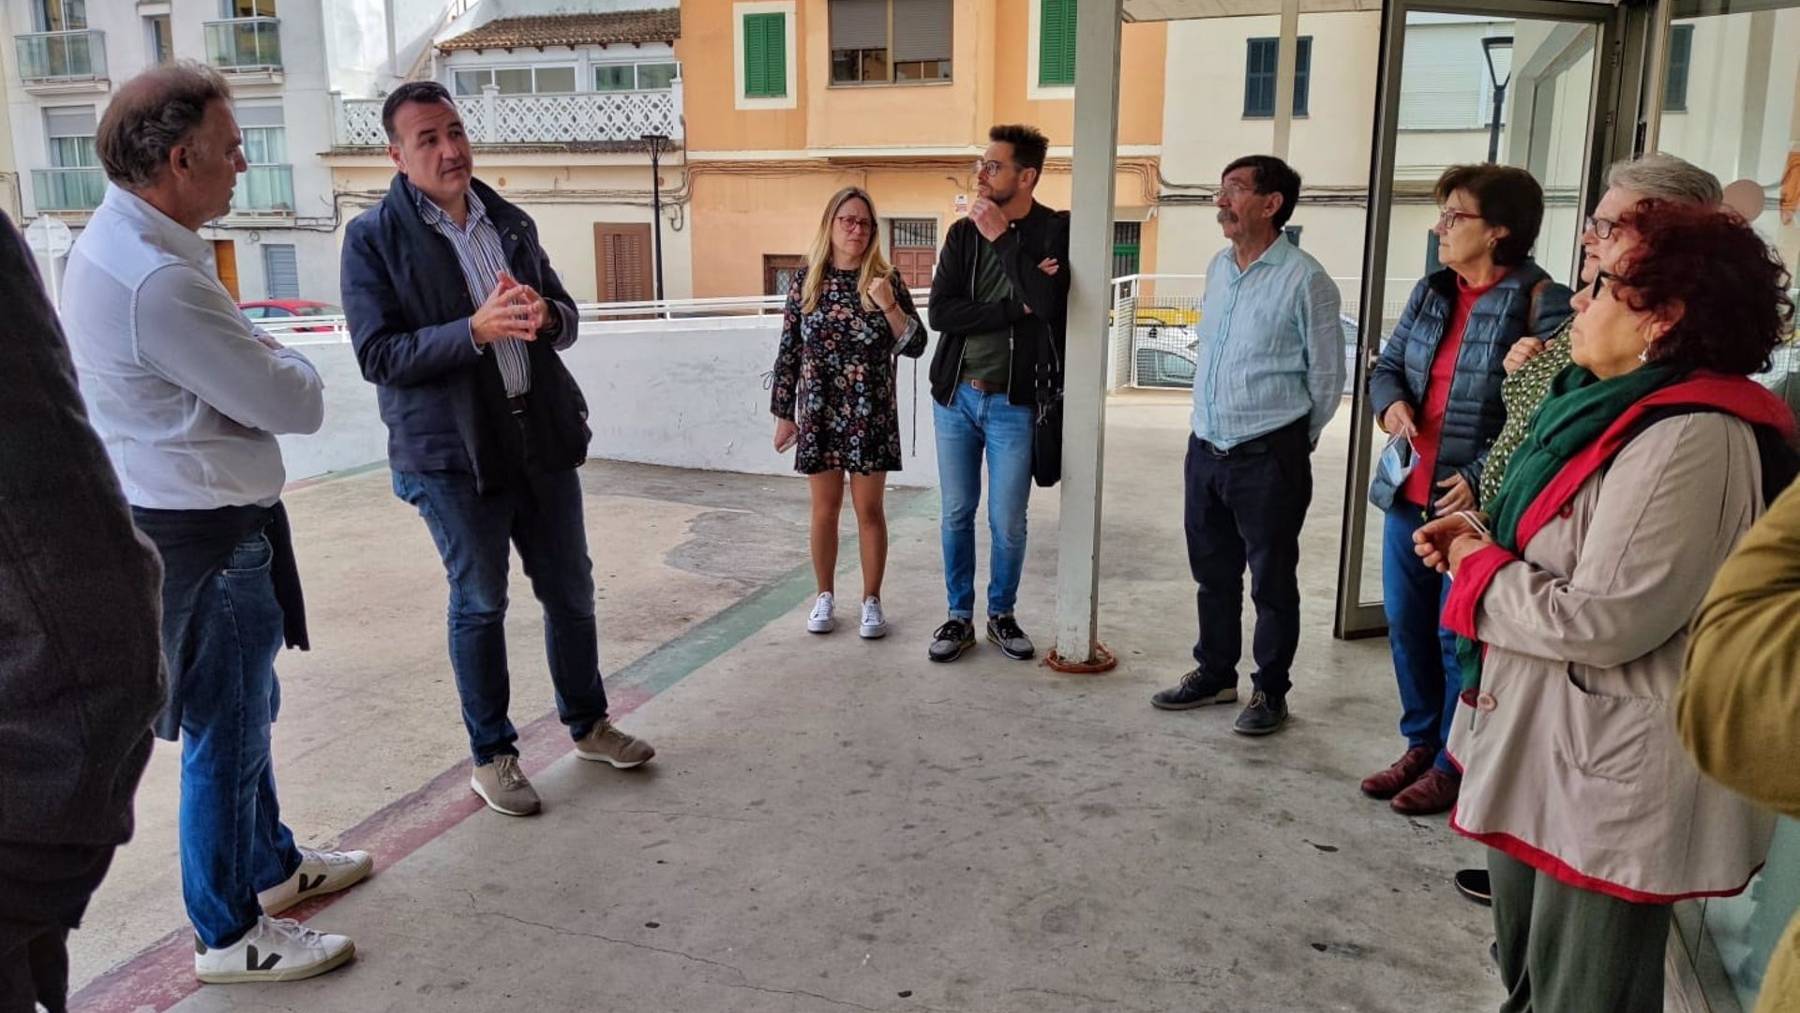 El teniente de alcalde de Movilidad Sostenible, Francesc Dalmau, se reúne con la Asociación de vecinos de El Coliseu